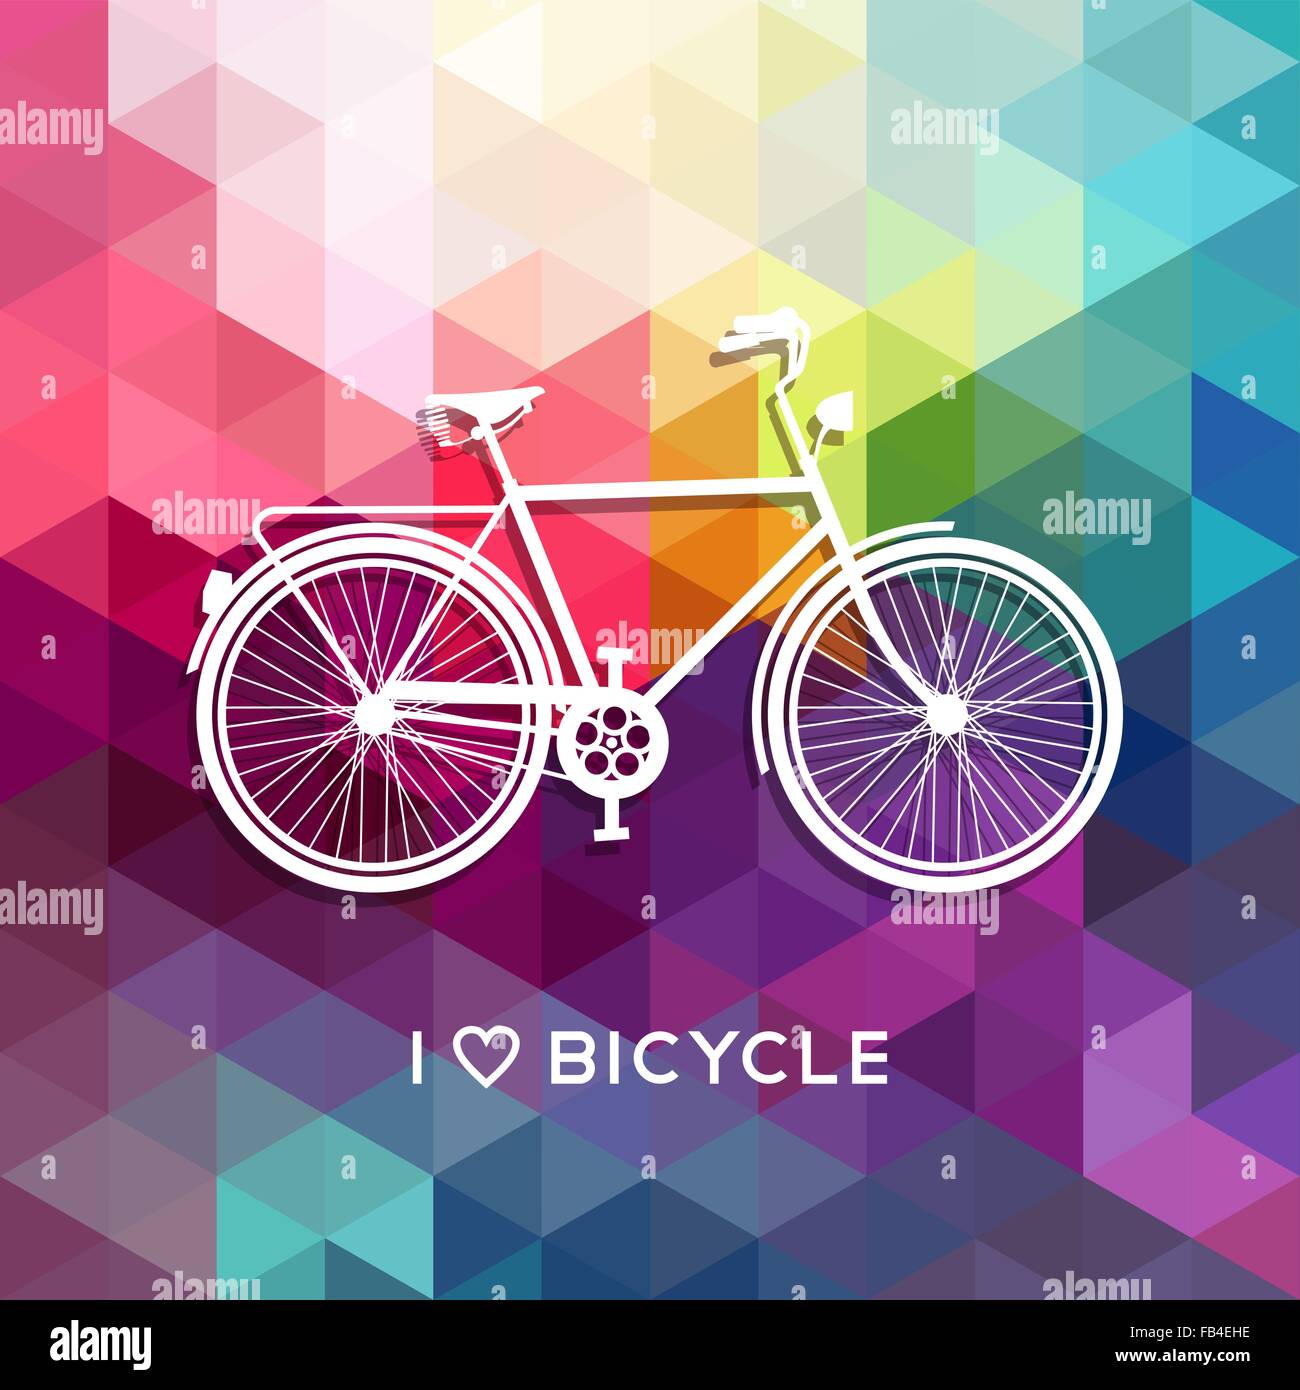 Retro-Fahrrad Typografie-Poster-Design, Bike-Silhouette-Konzept mit Text und bunten low-Poly-Hintergrund. EPS10 Vektor. Stock Vektor